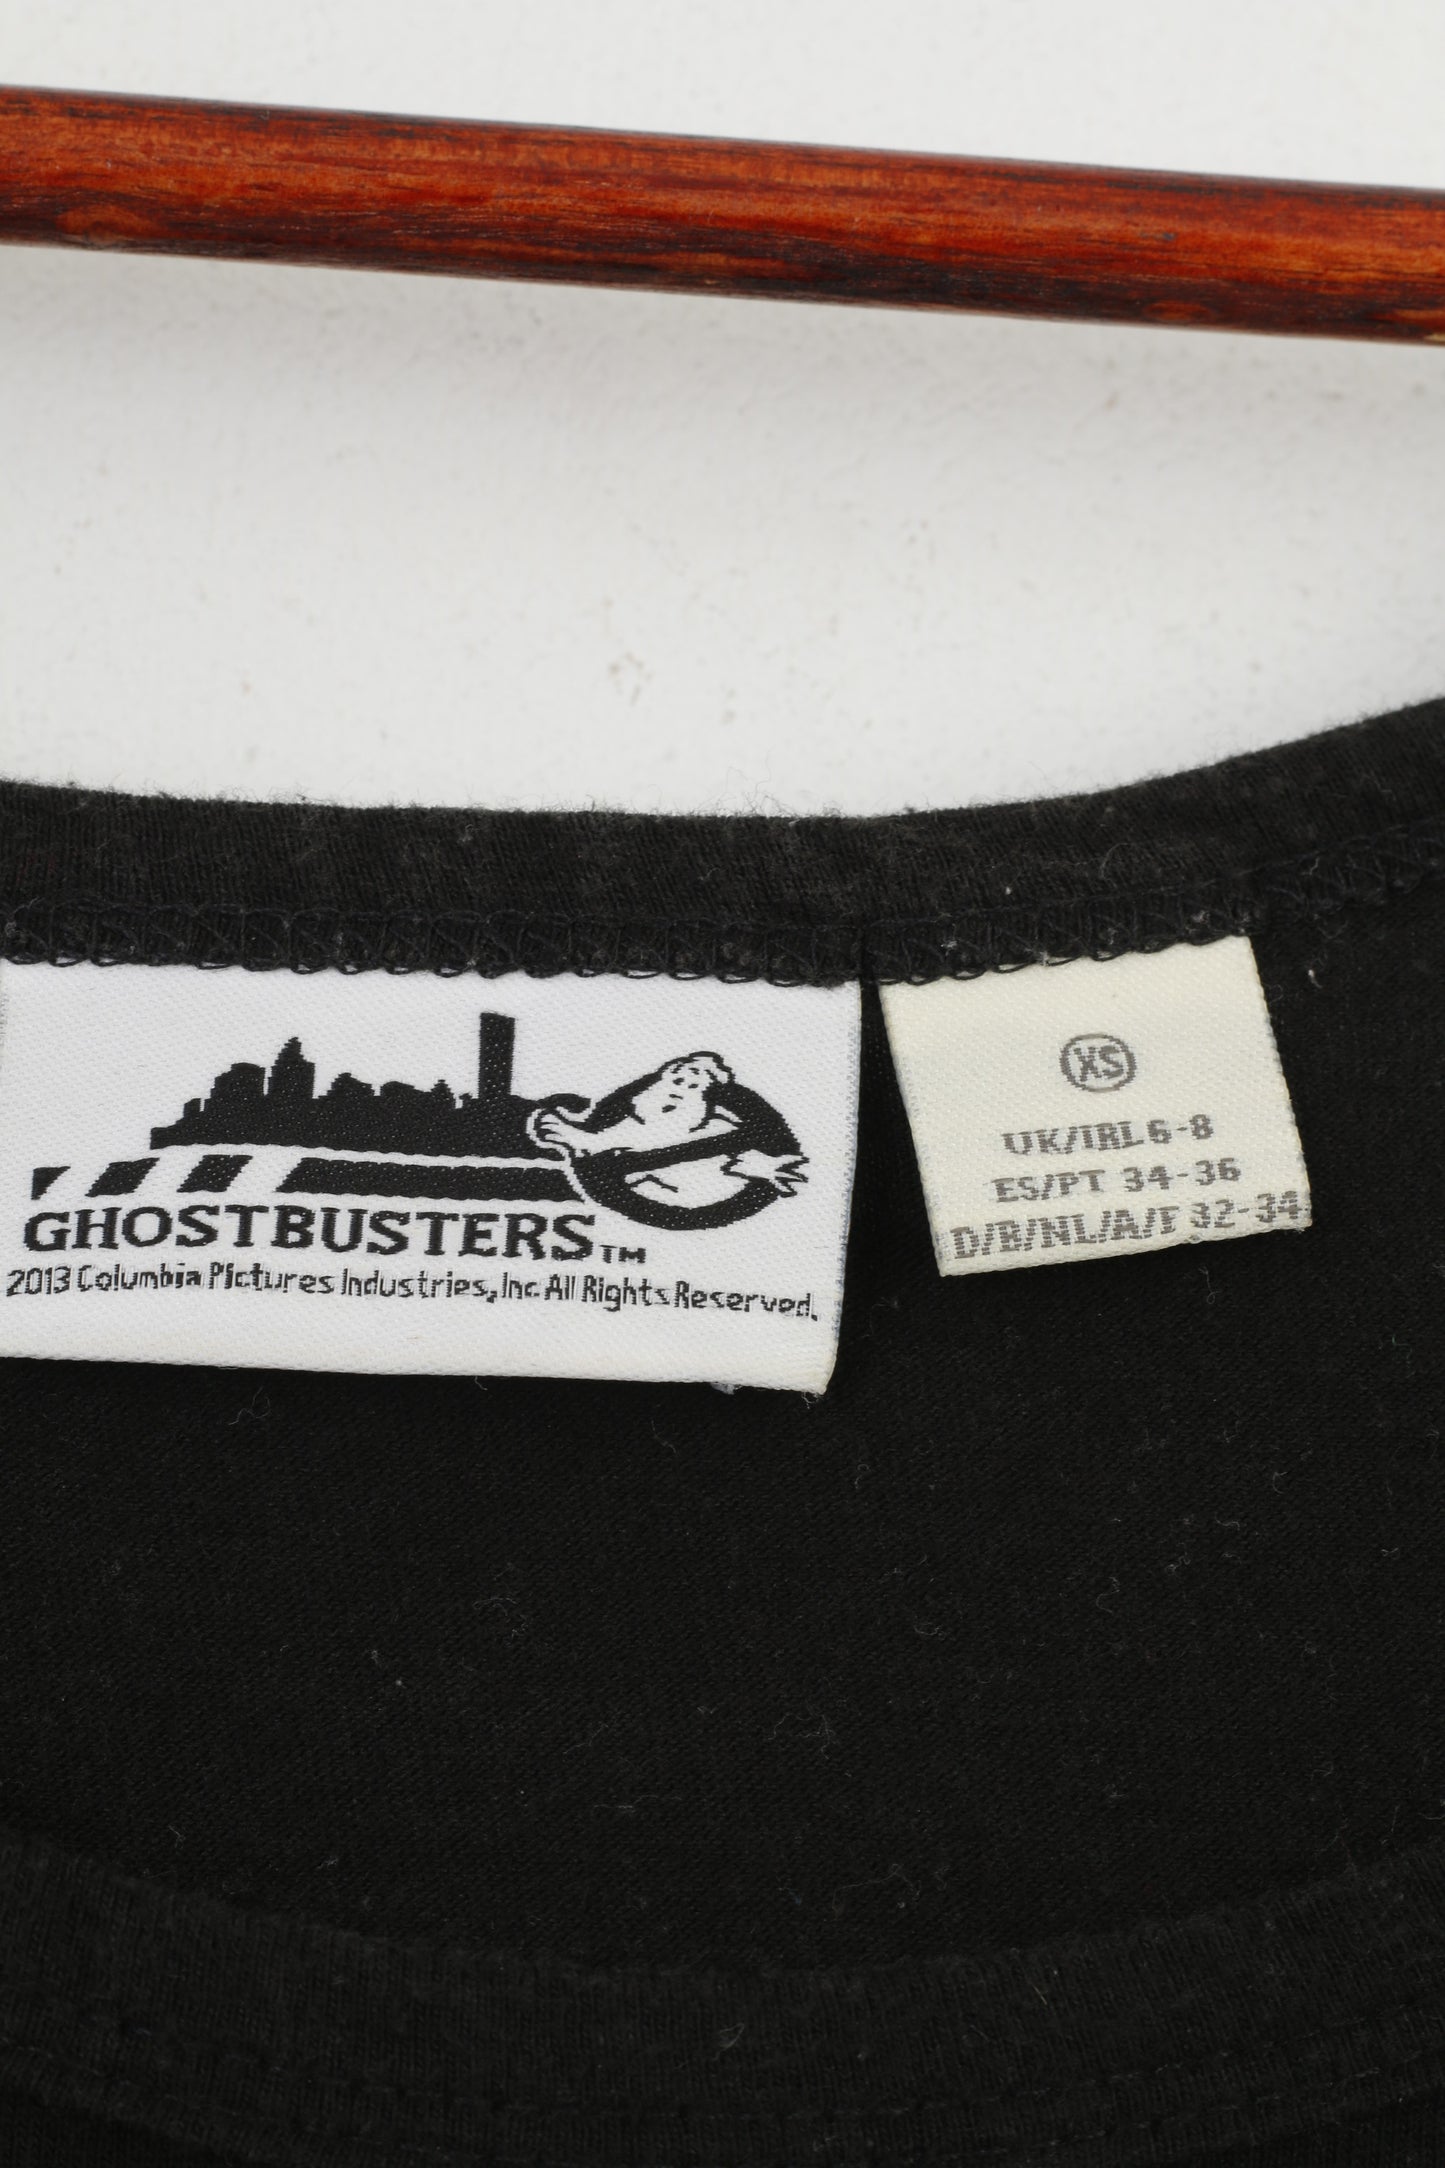 Ghostbusters Femmes XS Débardeur Chemise Gilet Noir Coton Vintage Fantôme Graphique Haut D'été 